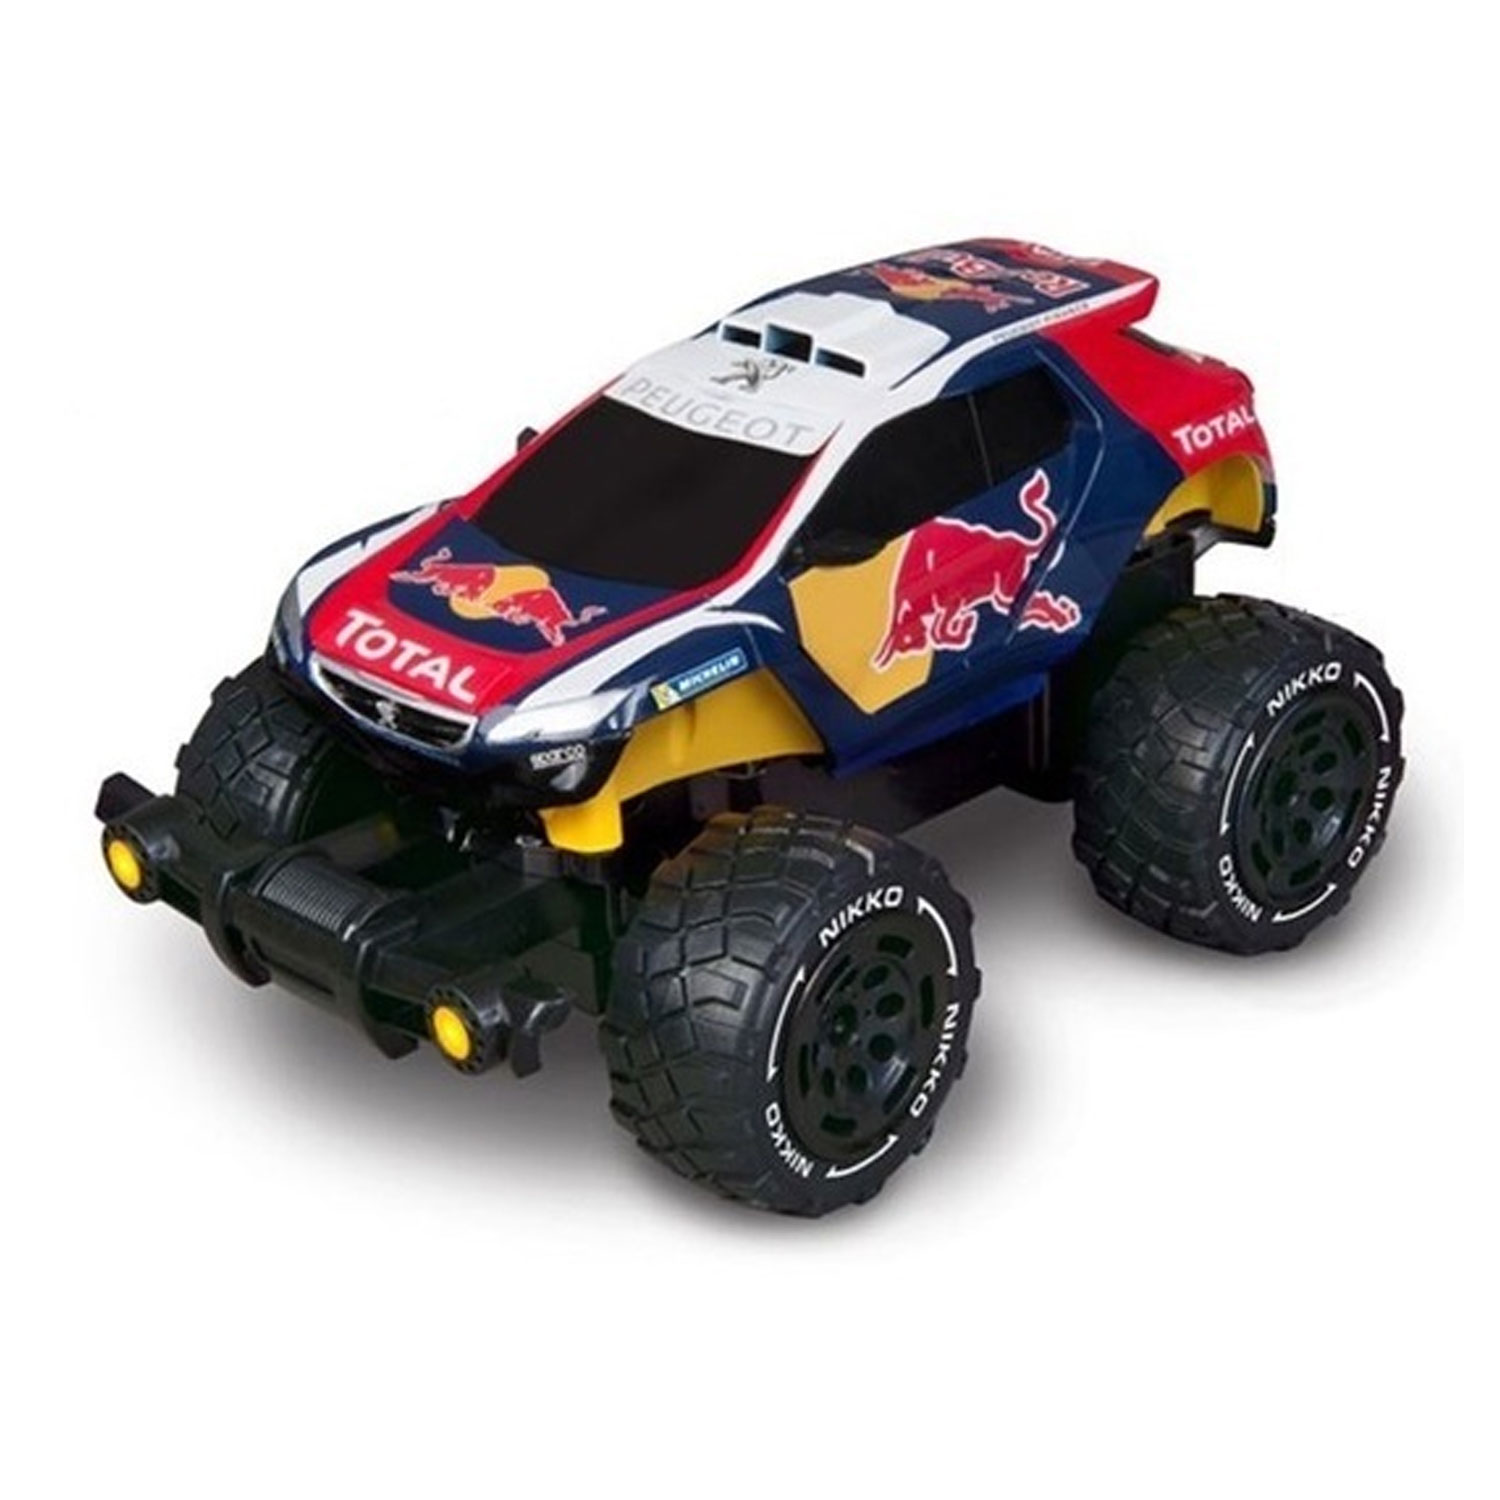 Voiture radiocommandée : Peugeot 2008 Redbull - Jeux et jouets